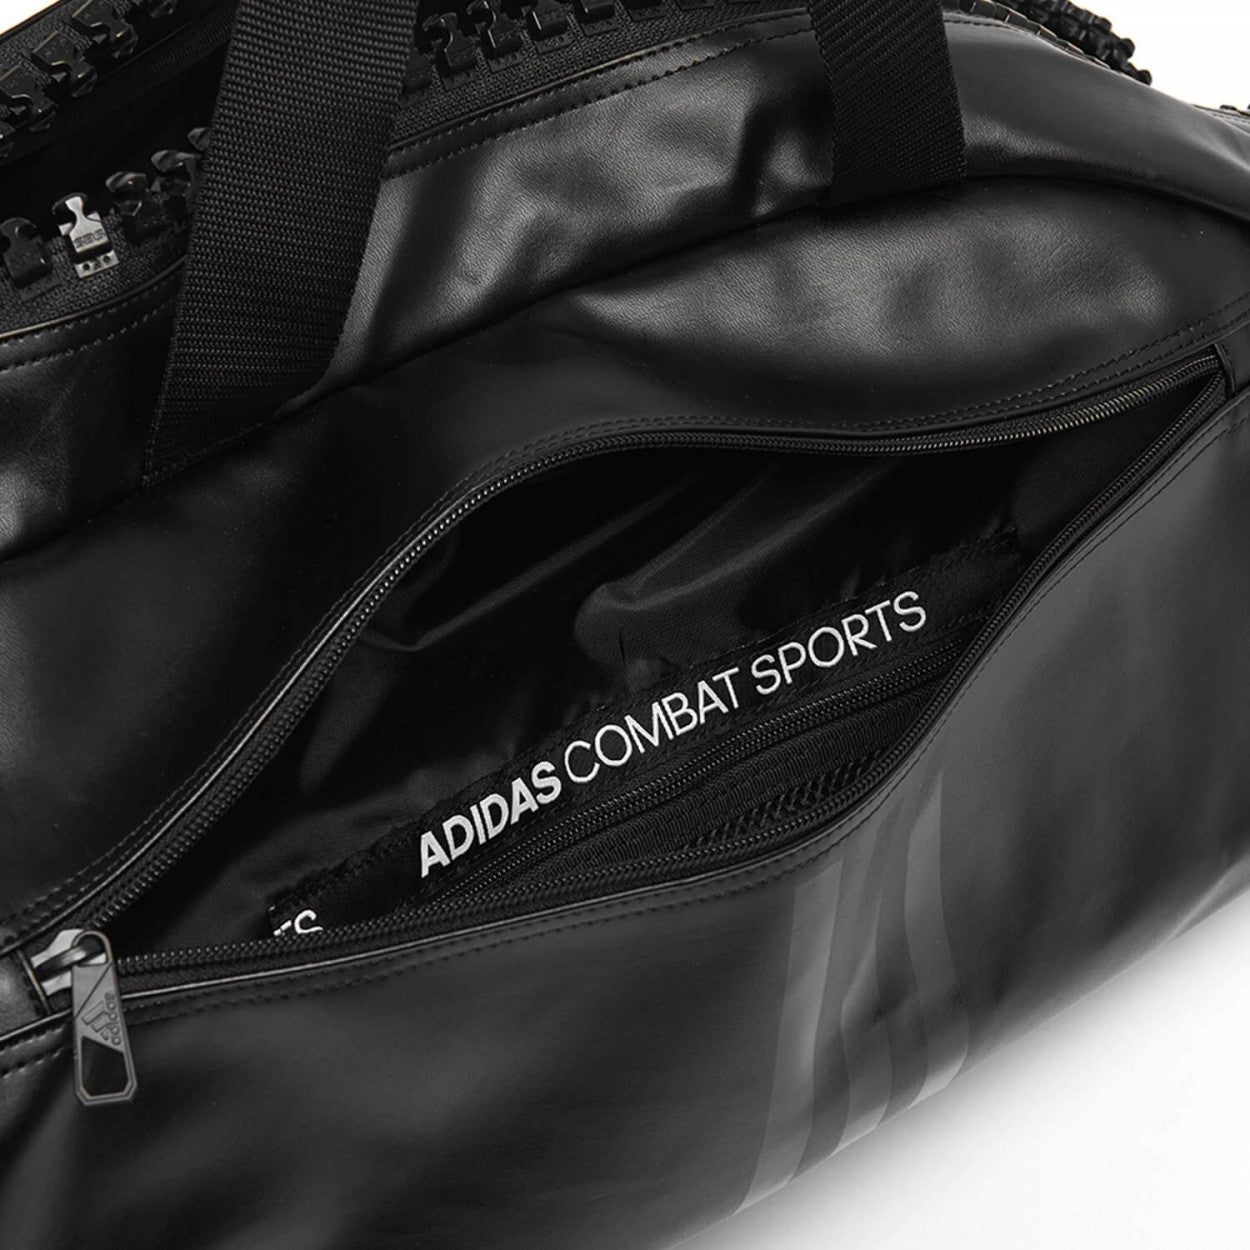 Αθλητική Τσάντα adidas 3 IN 1 TEAMBAG,  Μαύρο/Χρυσαφί